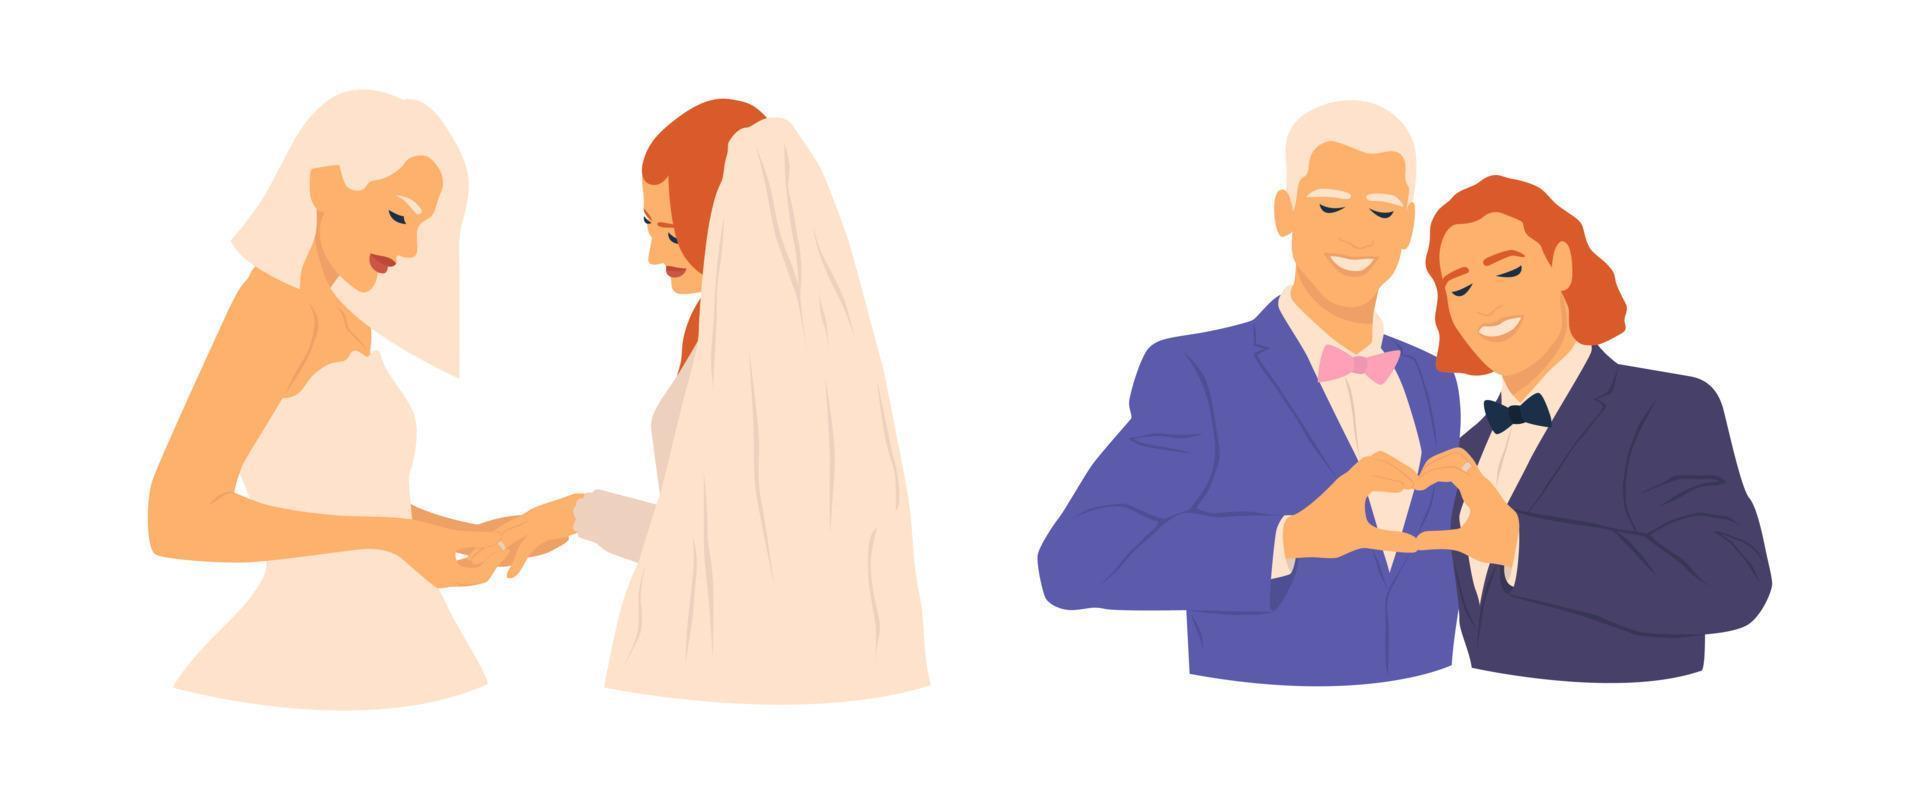 silueta de una pareja de lesbianas sonrientes que usan anillos de boda y una pareja gay que hace el corazón el día de la boda. felices cónyuges del mismo sexo celebrando el matrimonio. derechos lgbt ilustración plana dibujada a mano. vector